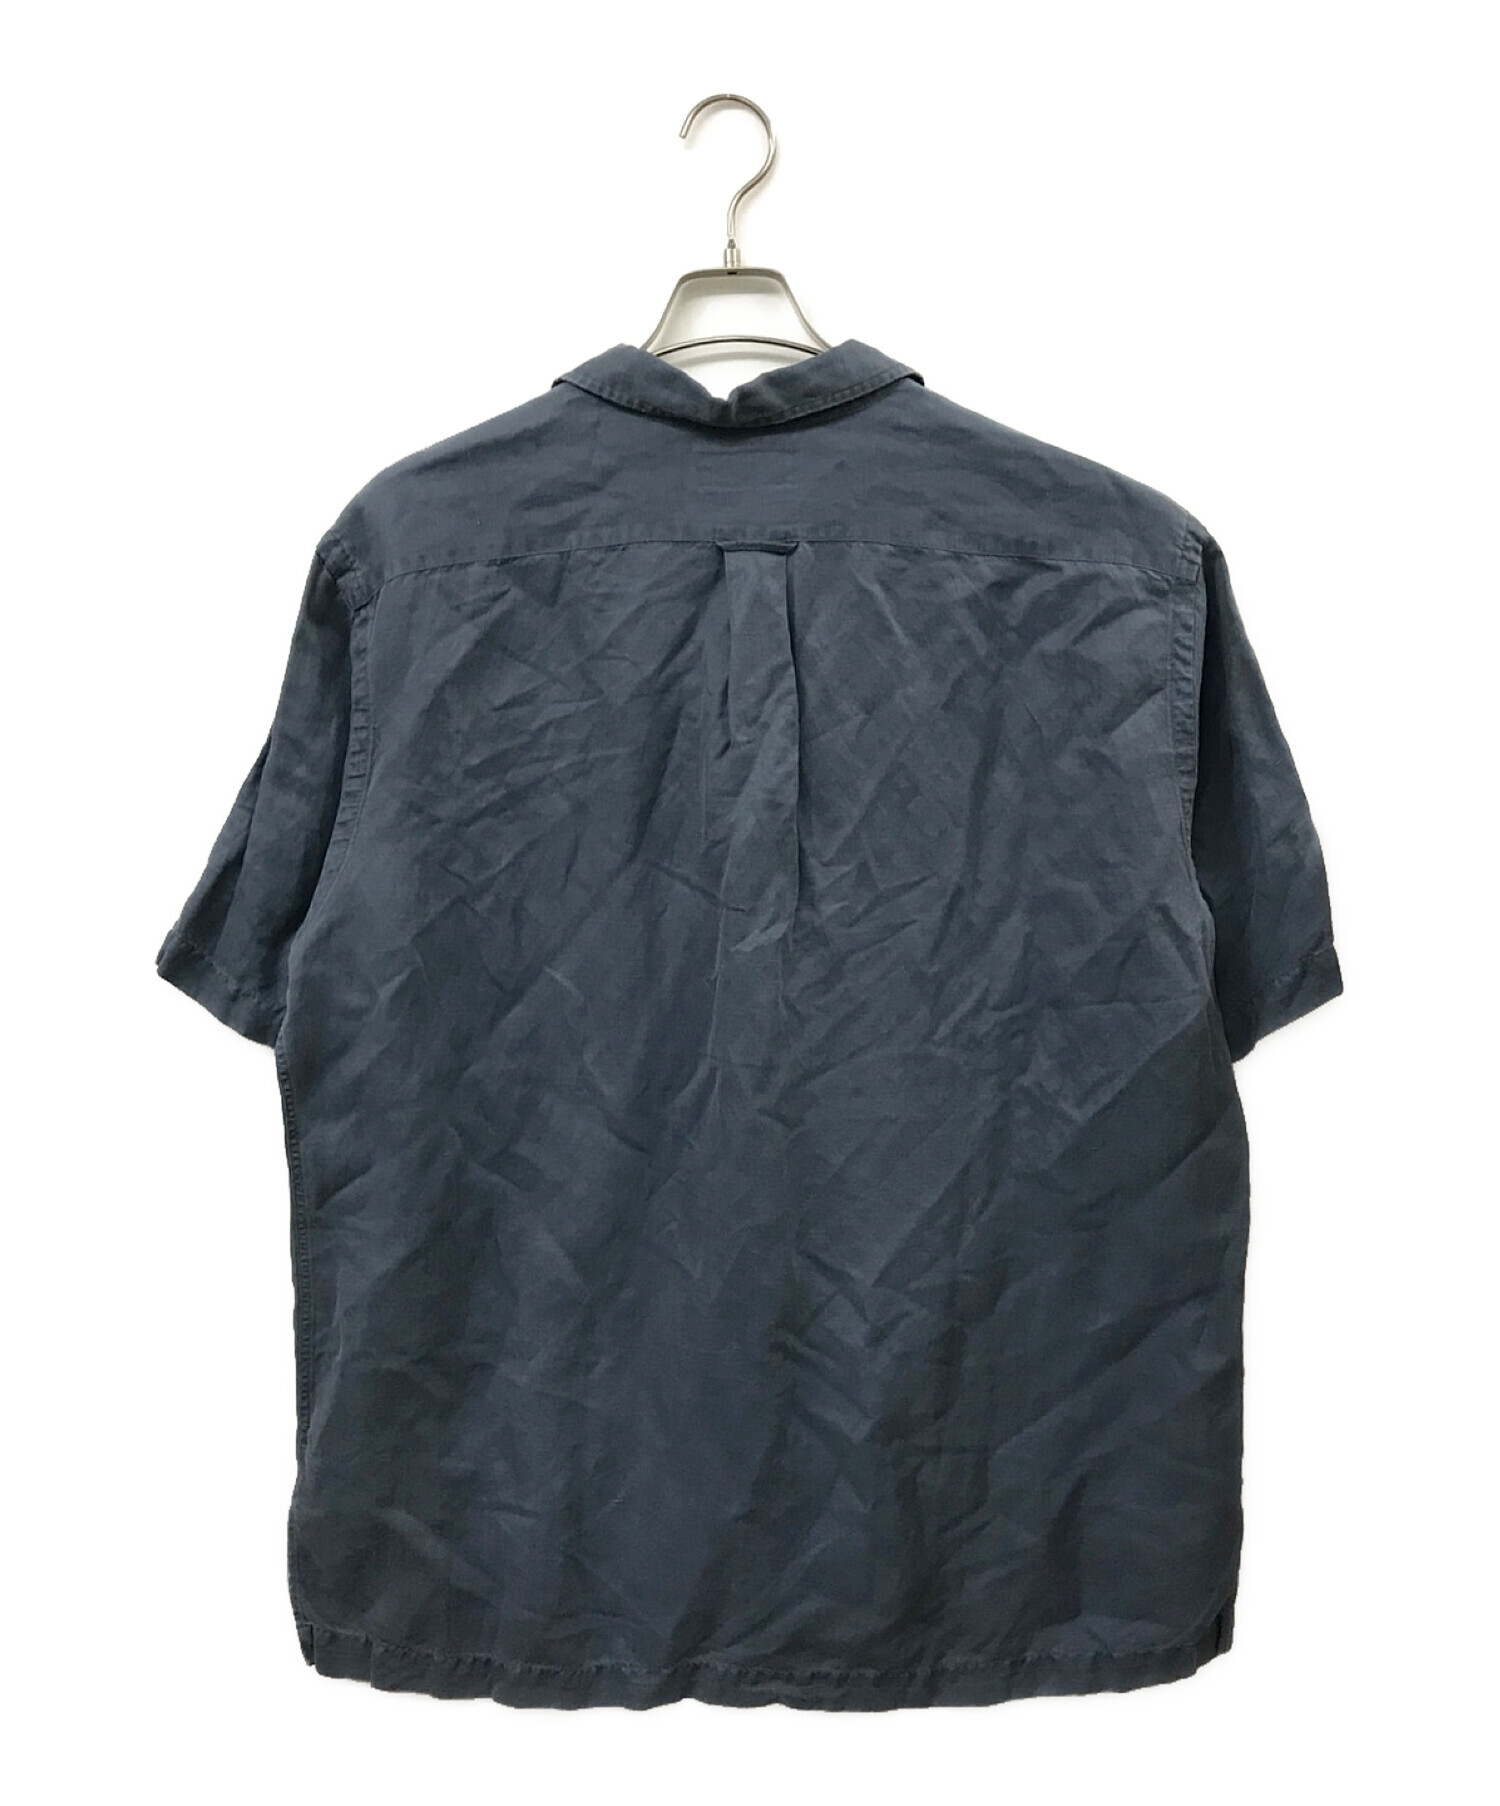 POLO RALPH LAUREN (ポロ・ラルフローレン) CALDWELL シルクリネンオープンカラーシャツ ネイビー サイズ:Ｌ